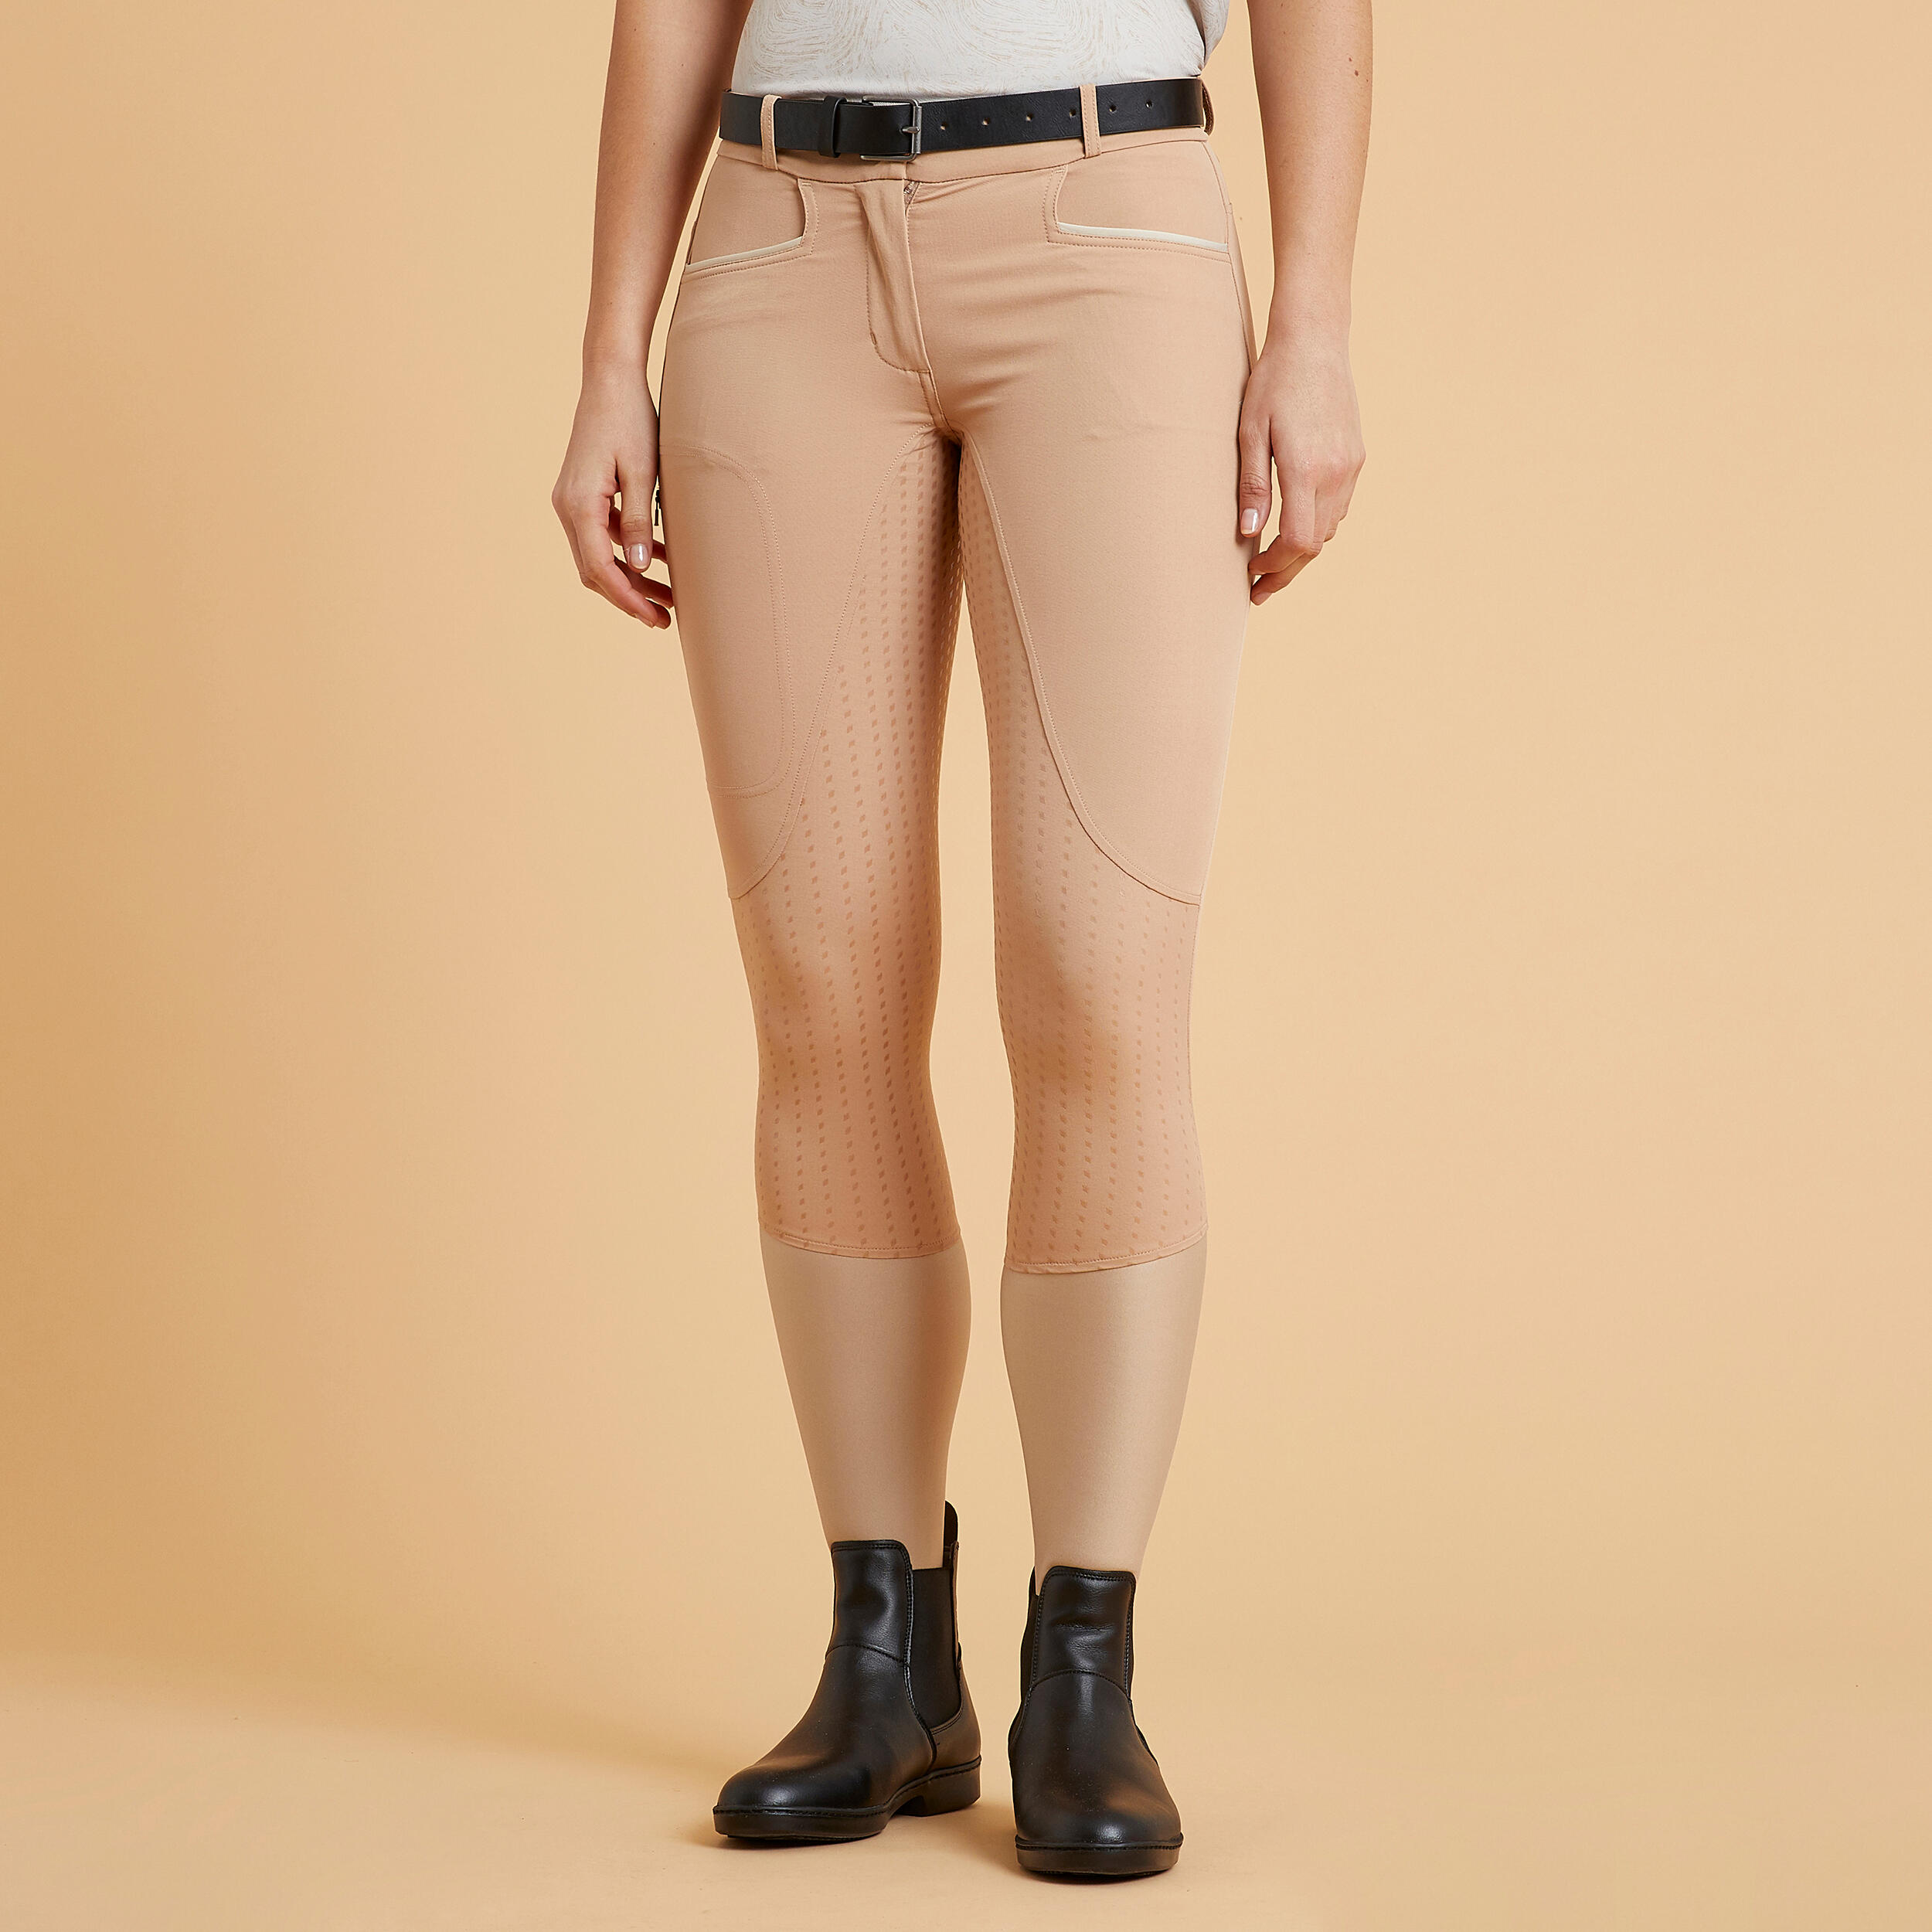 pantalon équitation léger fullgrip femme - 580 beige - fouganza